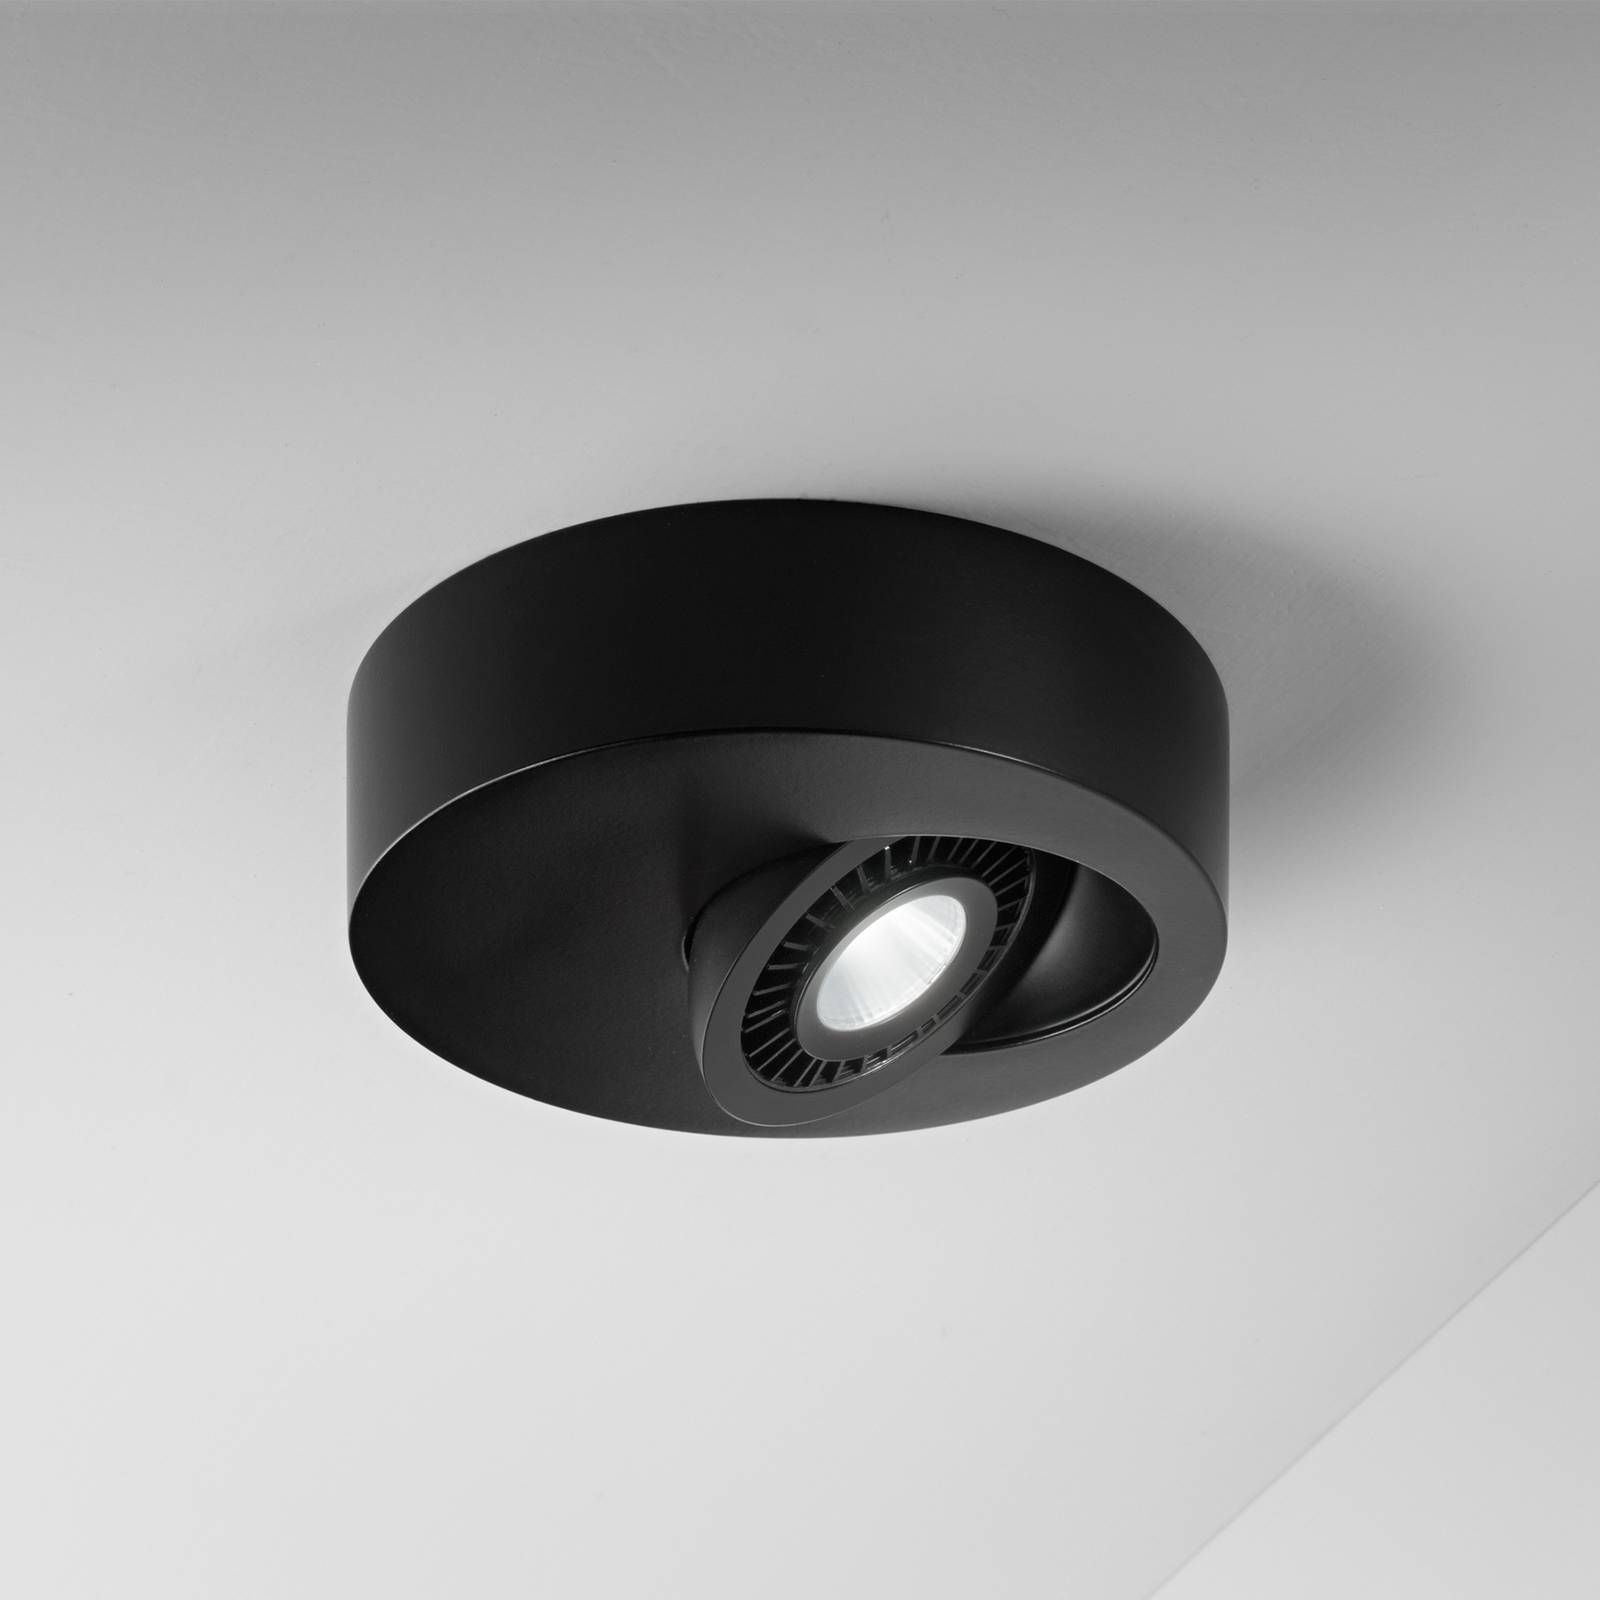 Egger Licht Geo stropné LED svetlo s svetlom, čierna, Chodba, hliník, 5W, K: 4cm